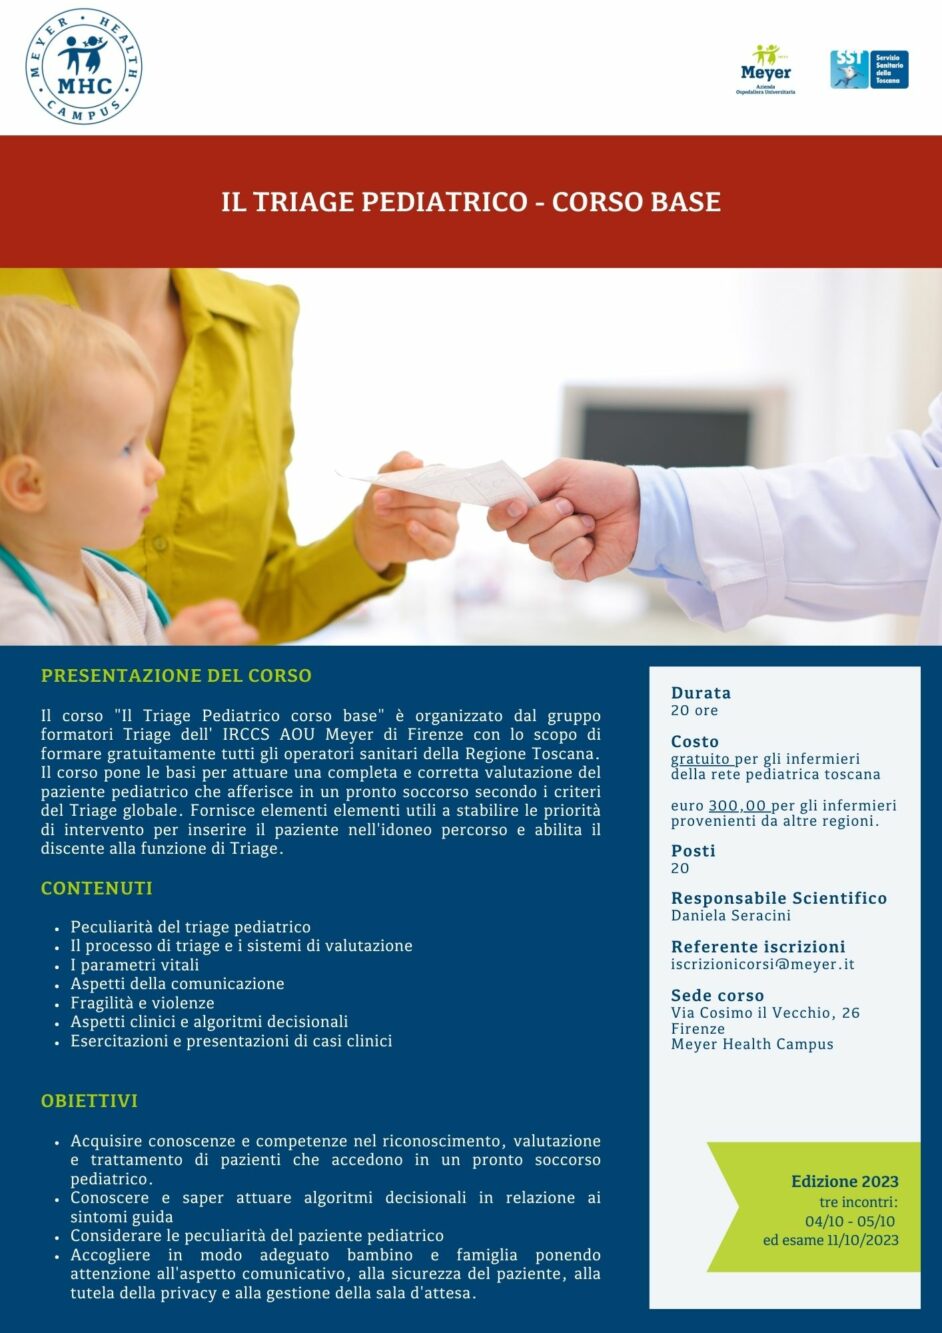 Il Triage Pediatrico – Corso base (4-11 ottobre 2023)